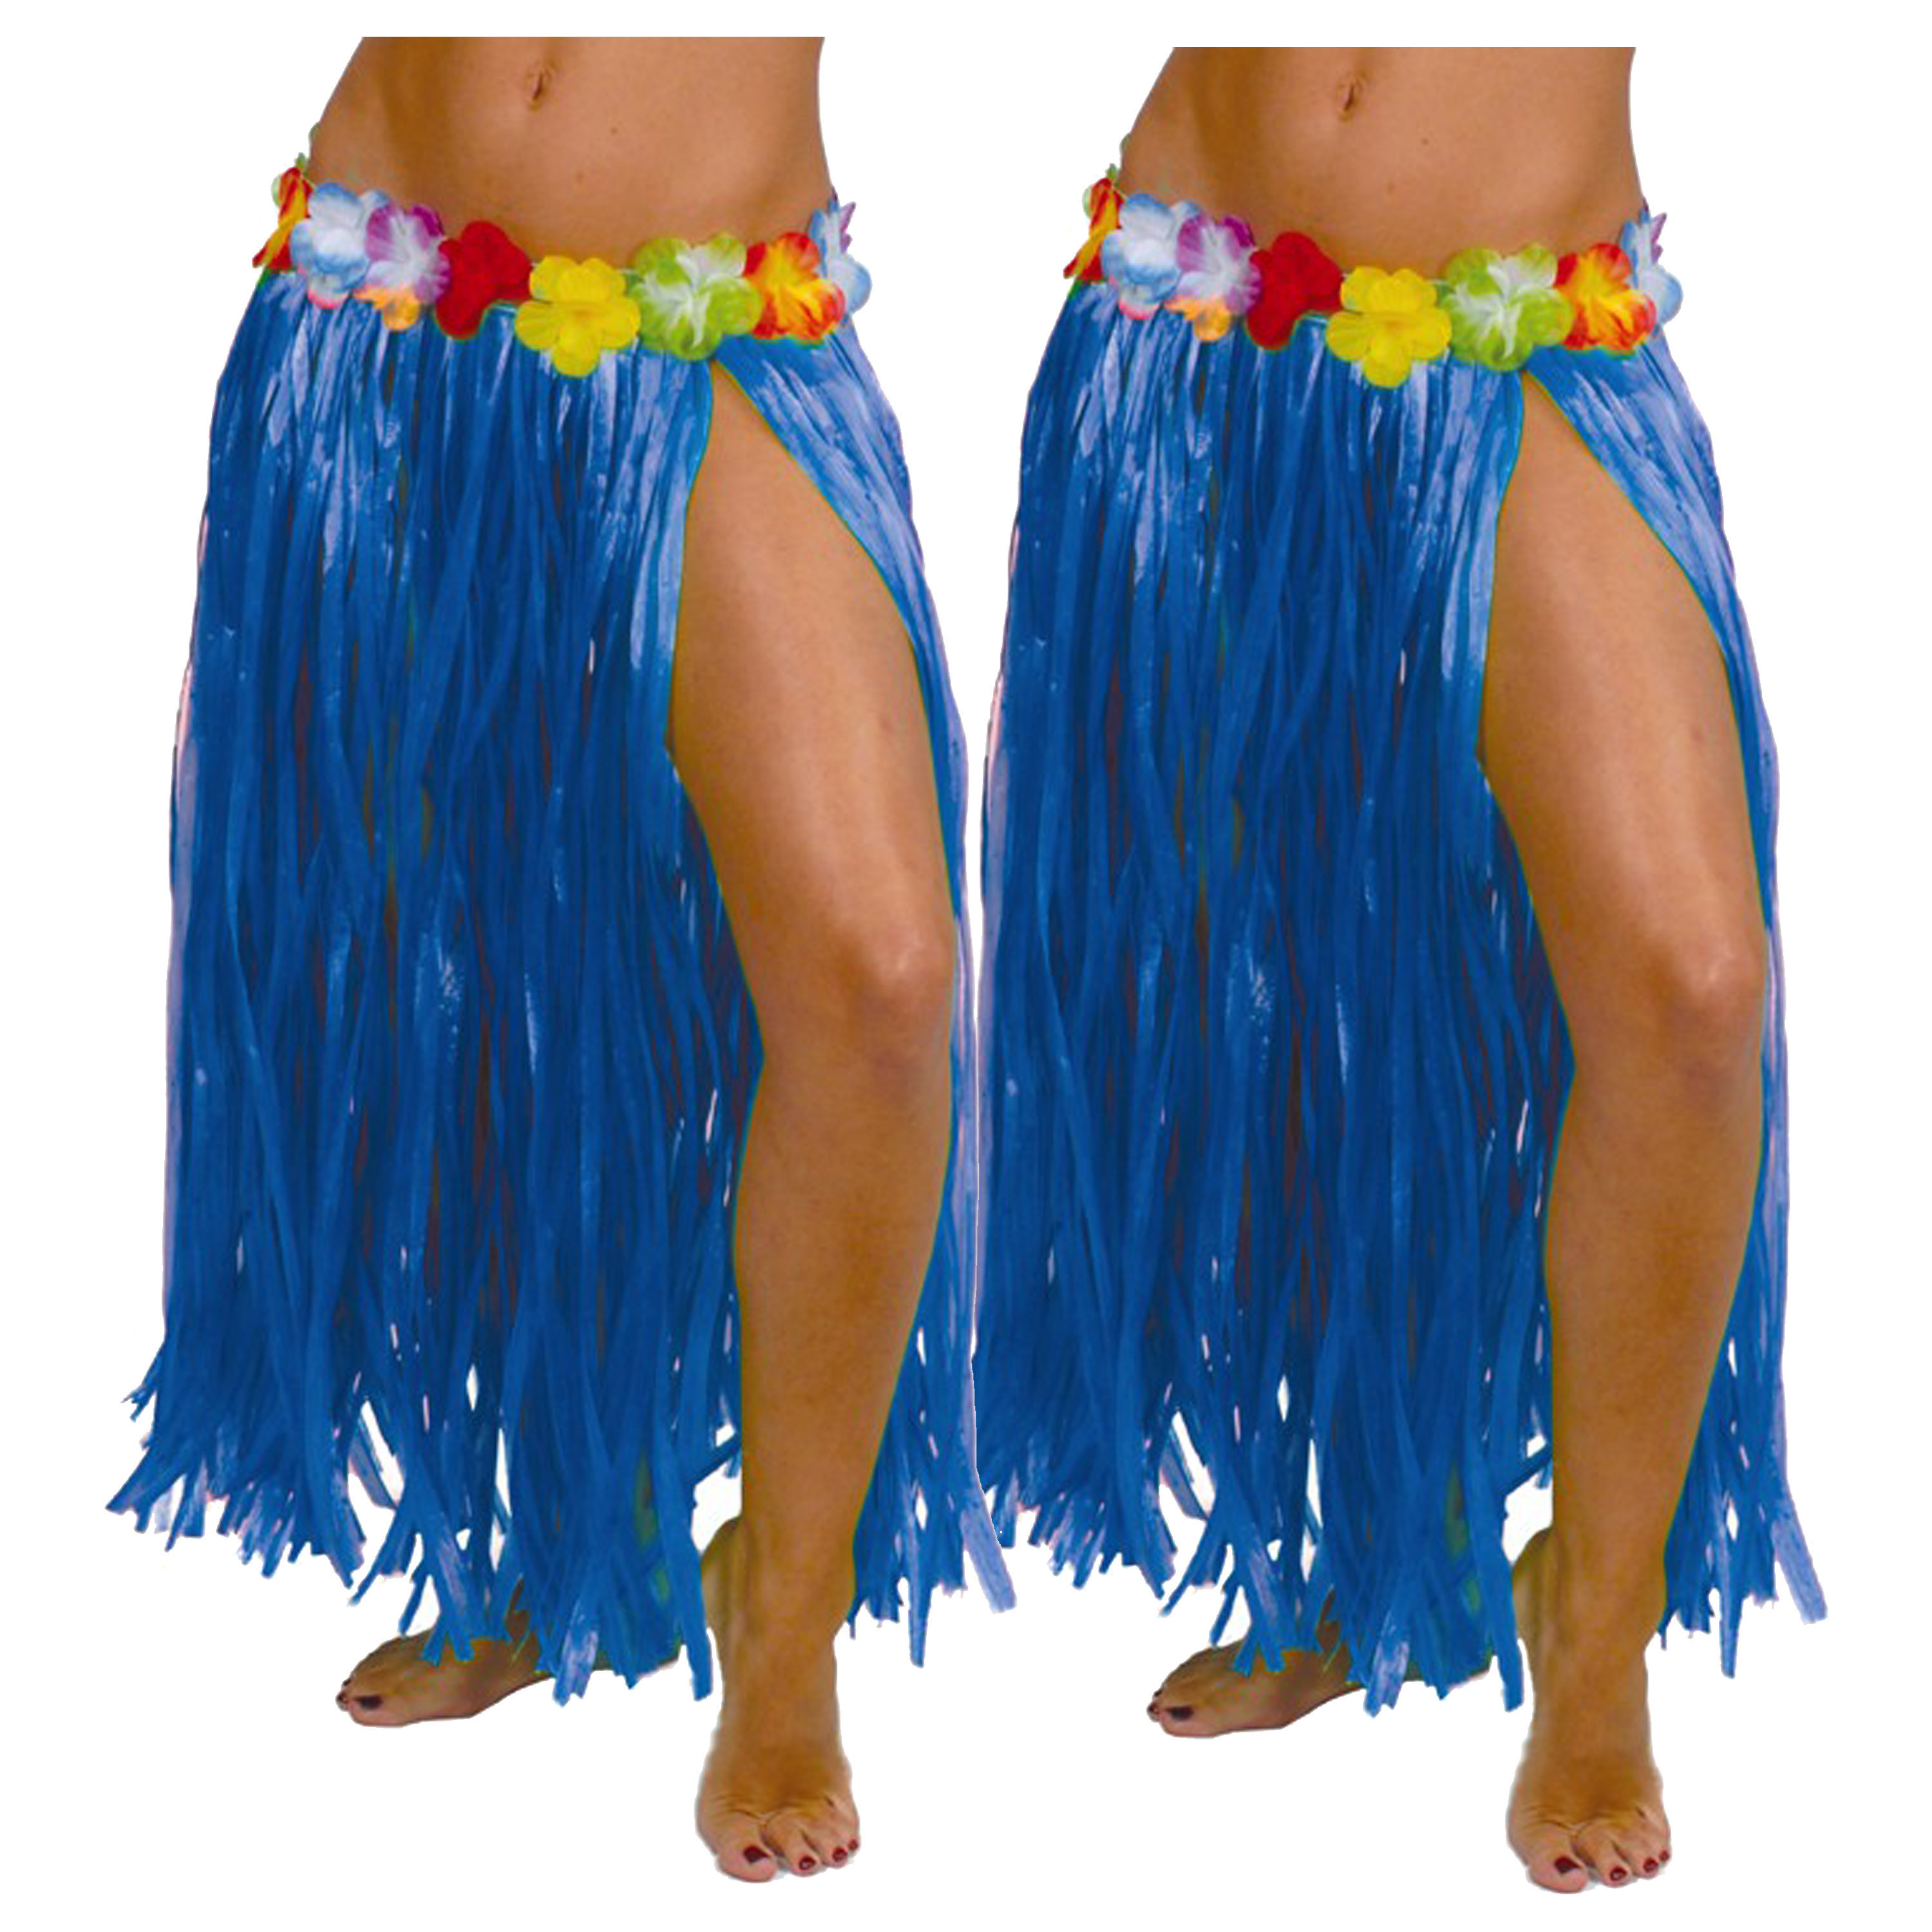 Hawaii verkleed rokje - 2x - voor volwassenen - blauw - 75 cm - rieten hoela rokje - tropisch